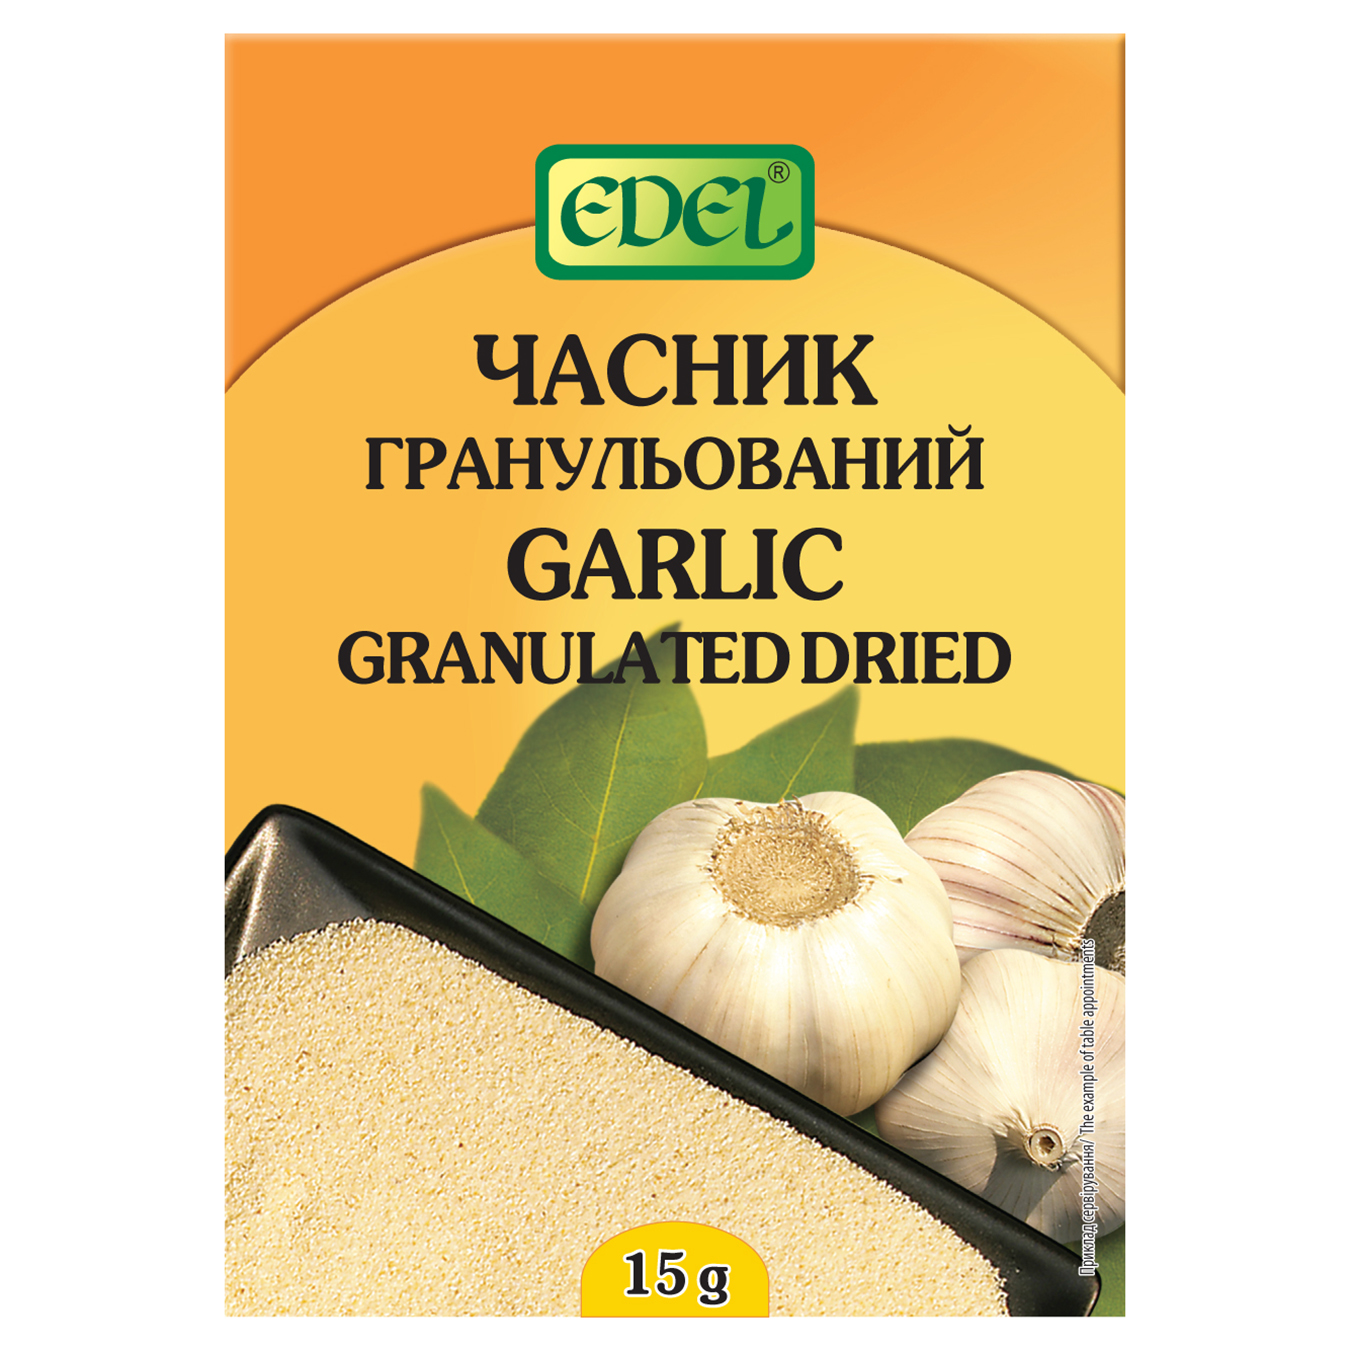 Edel Dried Granulated Garlic 15g